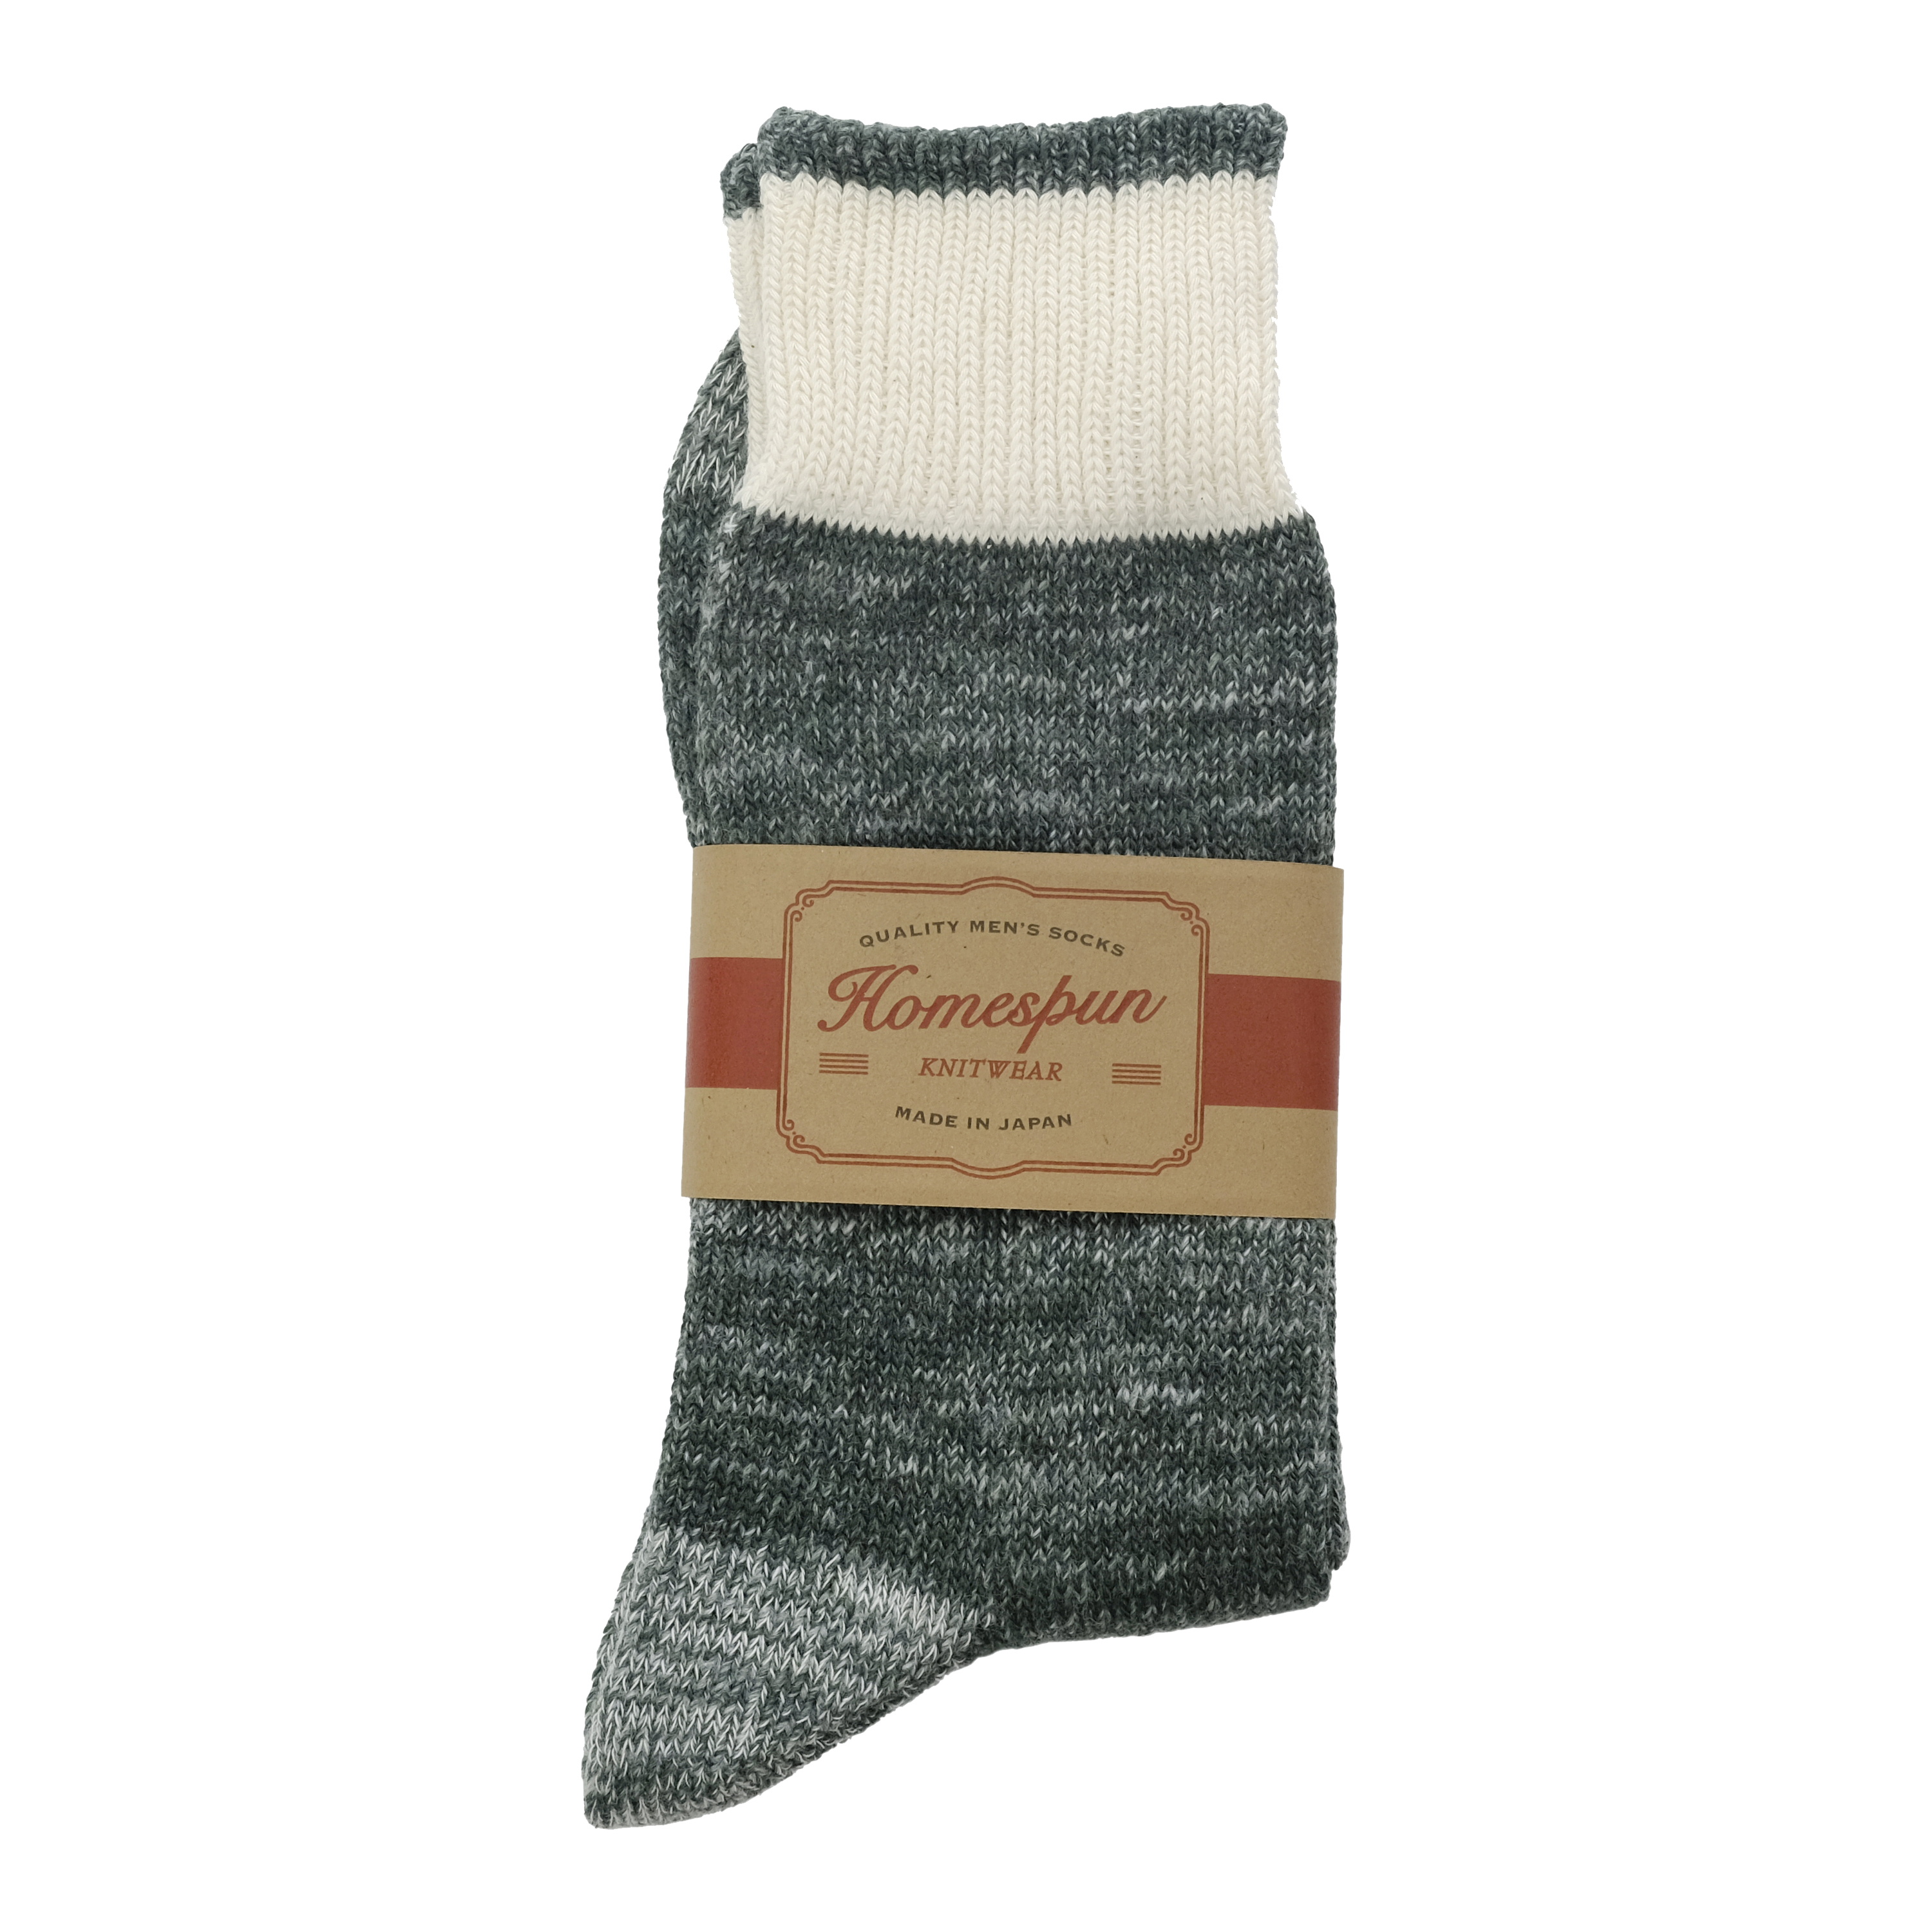 Homespun Knitwear - Lot 011 Dustbowl Work Socks - Sage